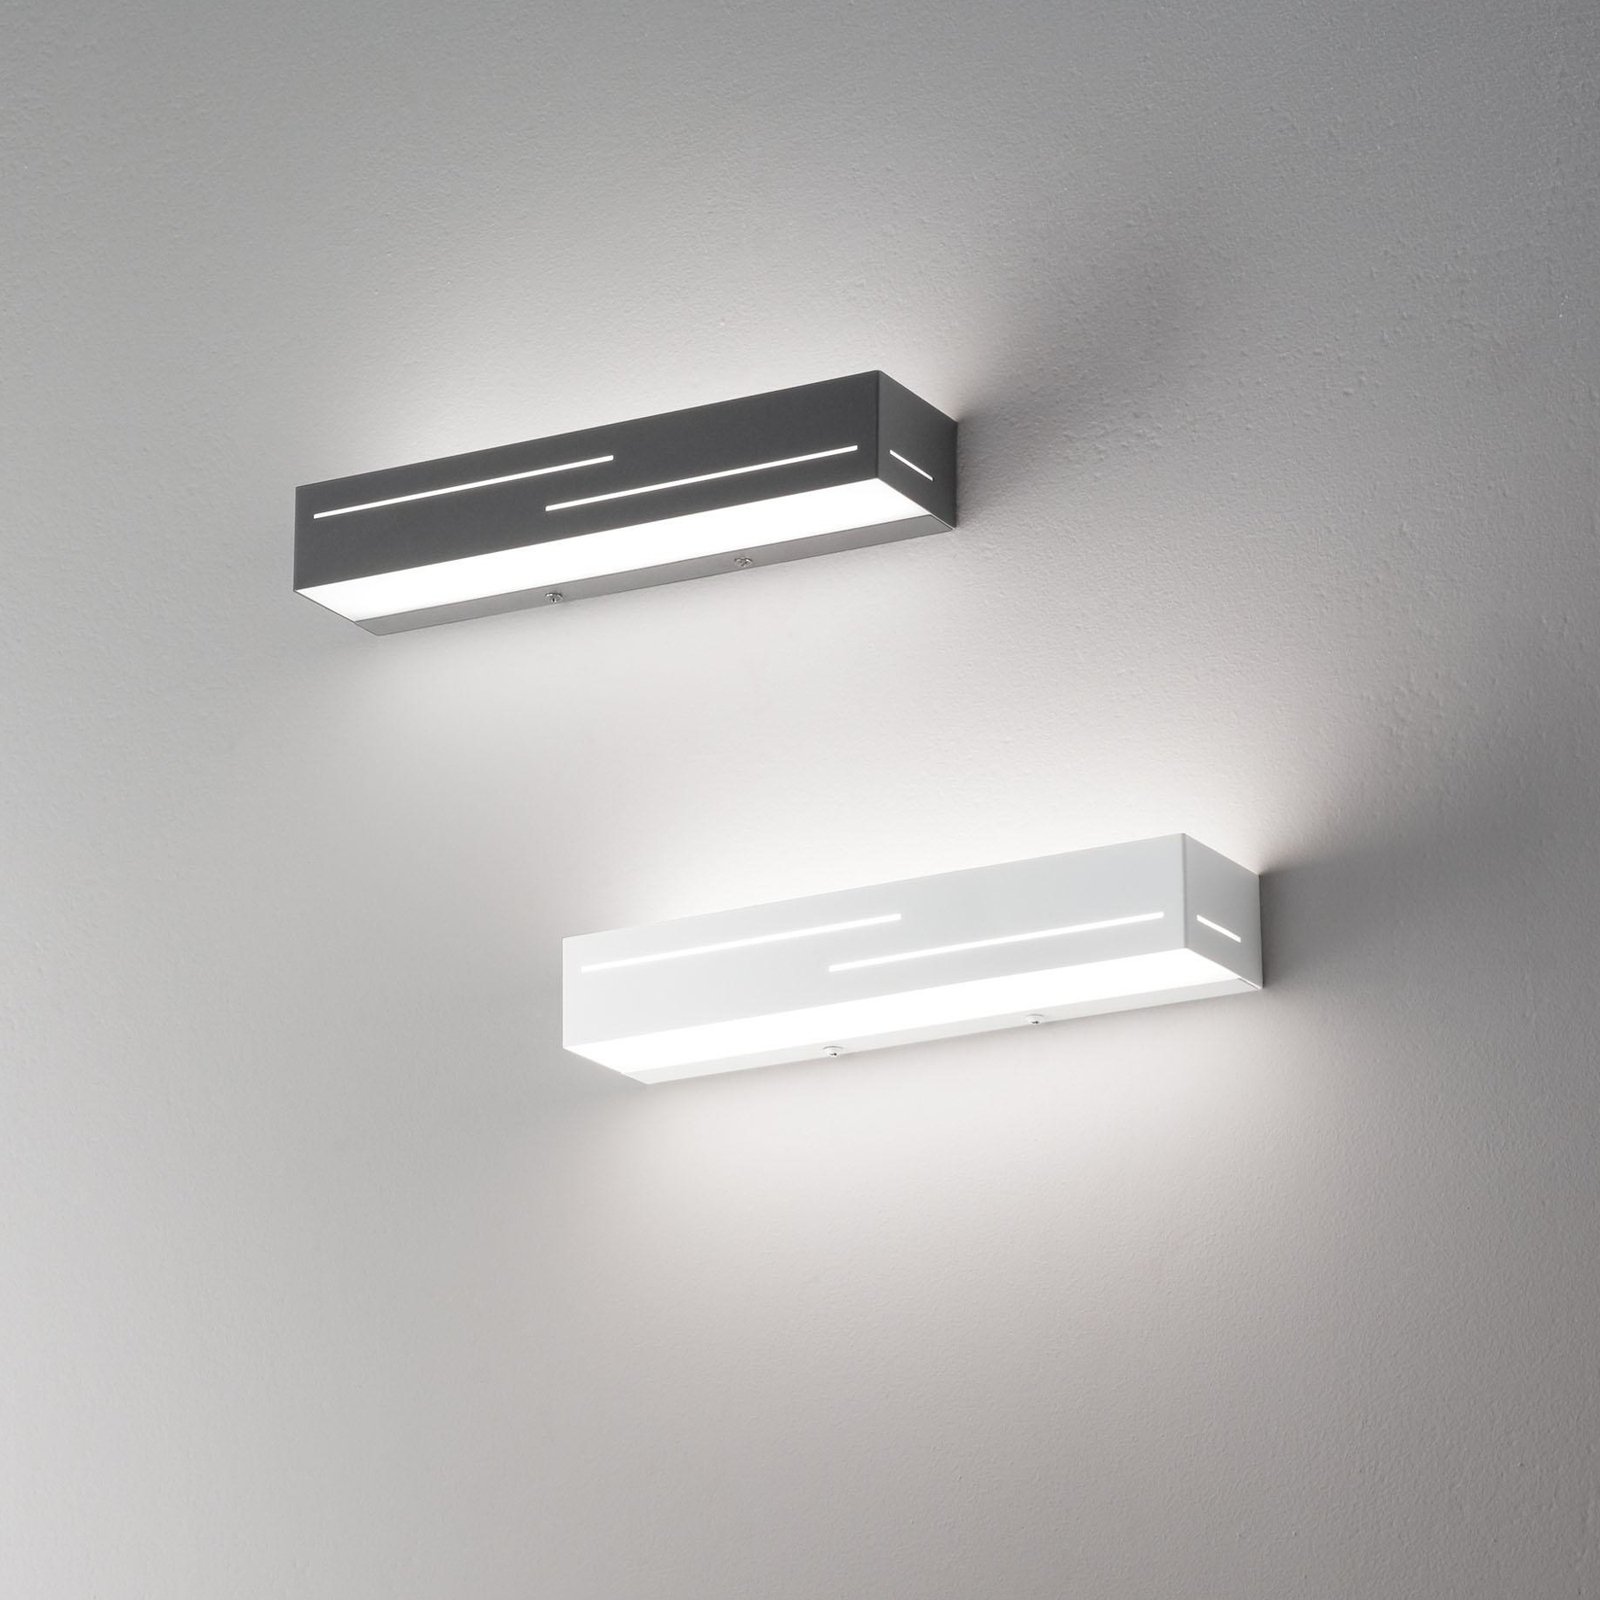 LED fali lámpa Banny, fehér, szélesség 31 cm, fel- & lefelé világító lámpa